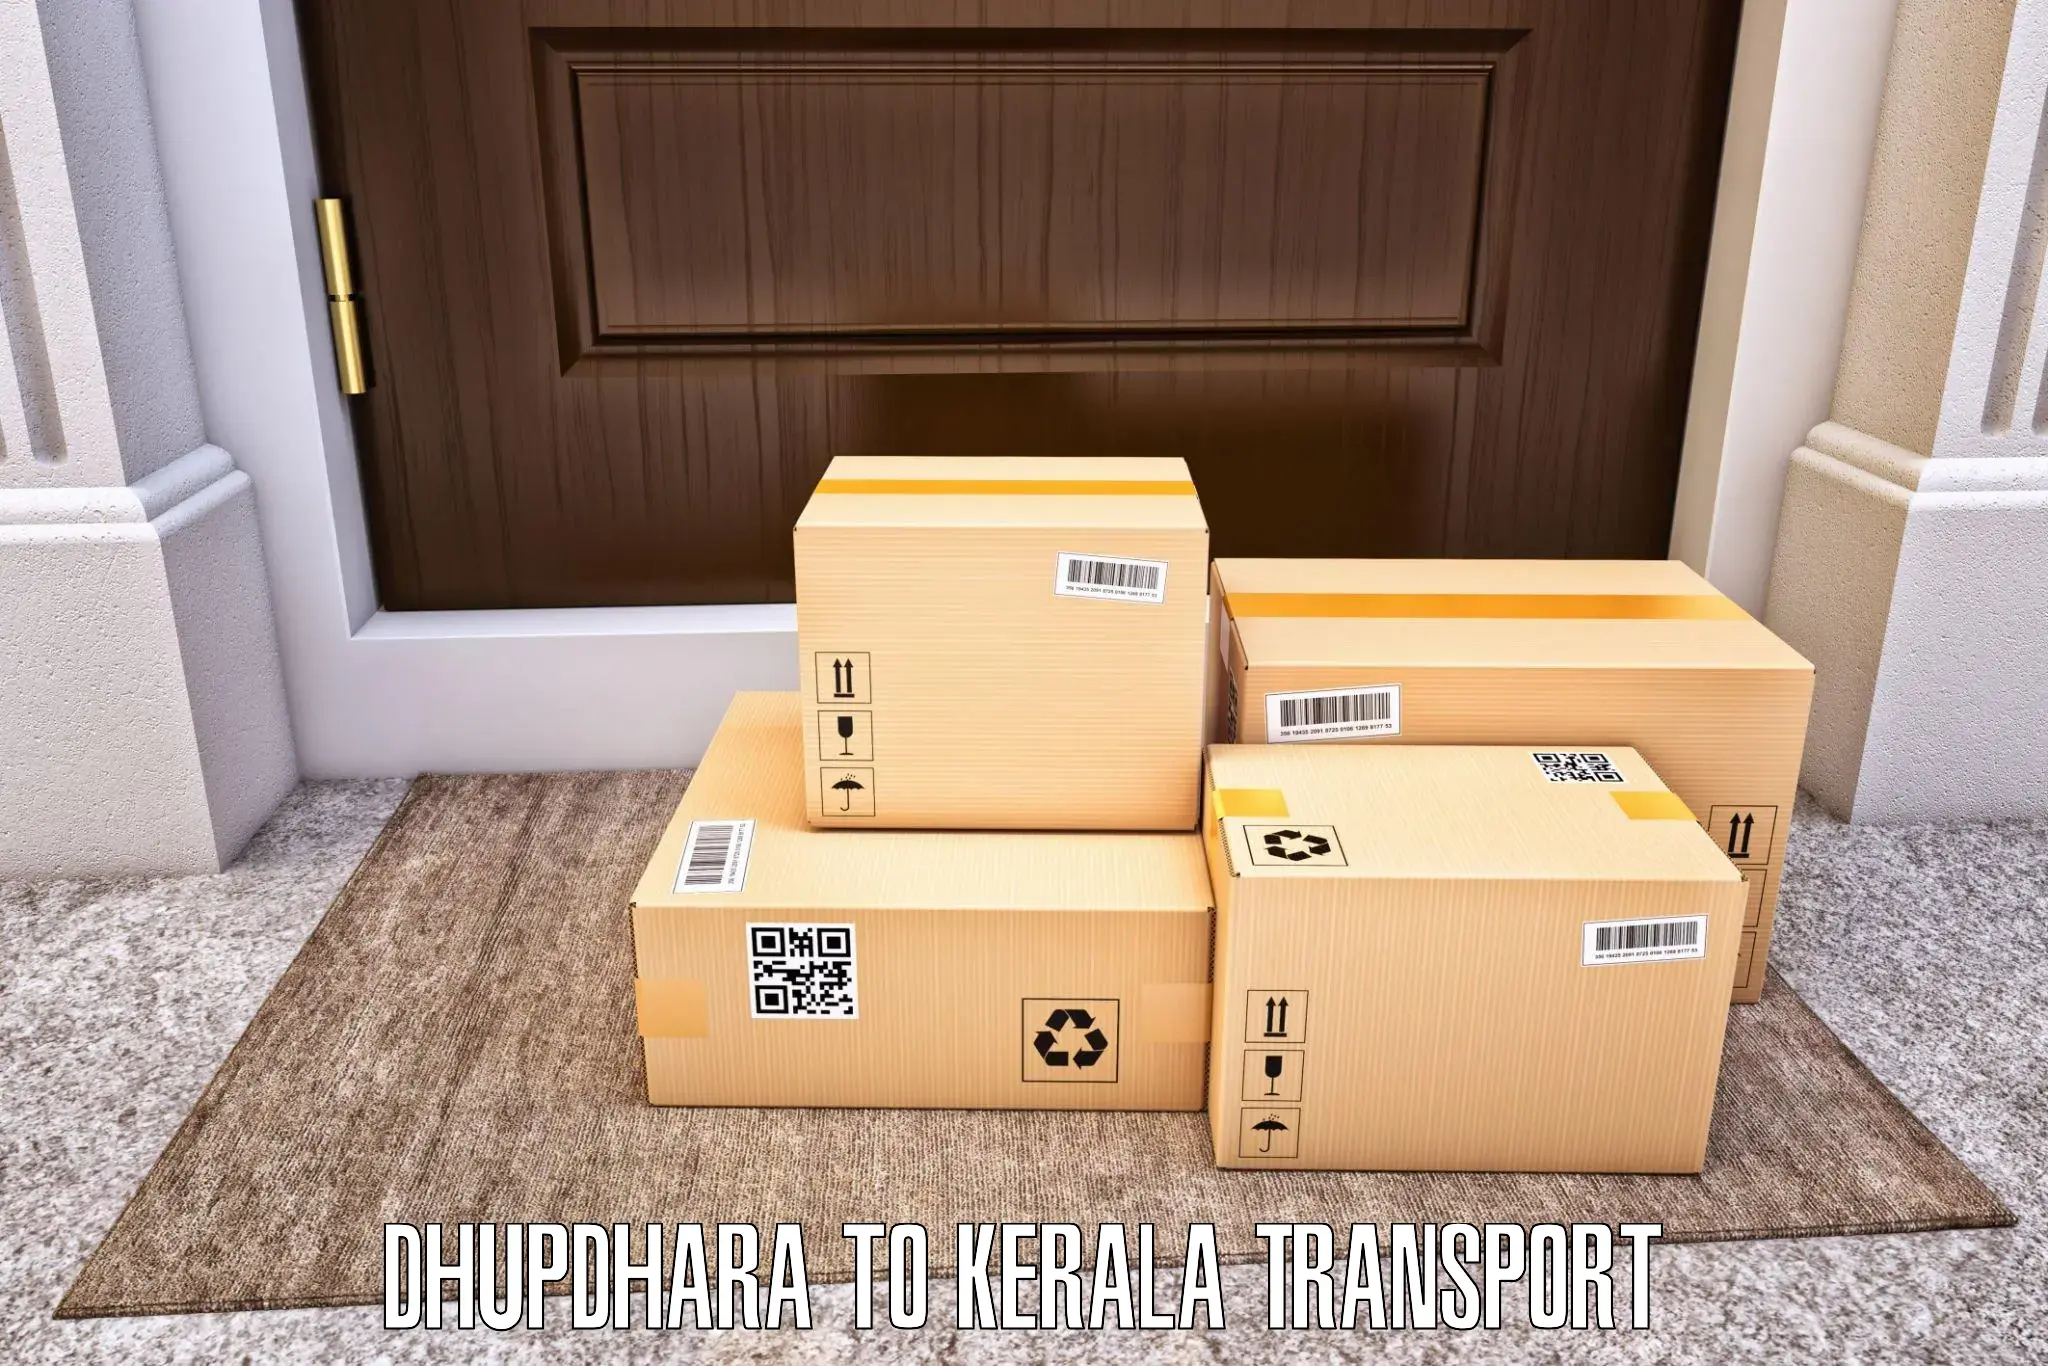 Lorry transport service Dhupdhara to Pala